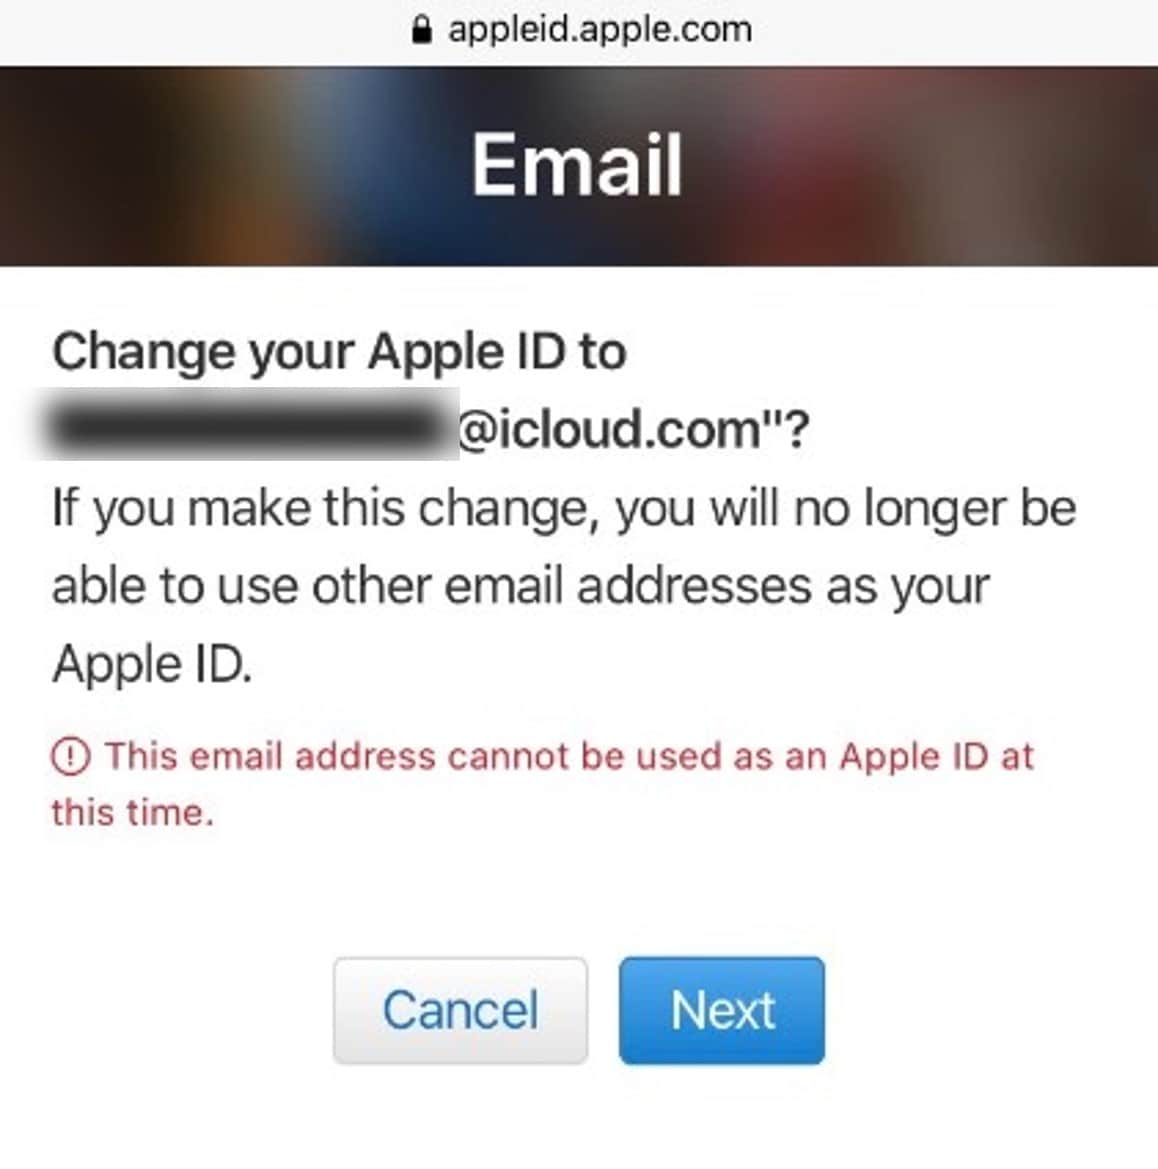 cambiare l'id apple con l'email di icloud